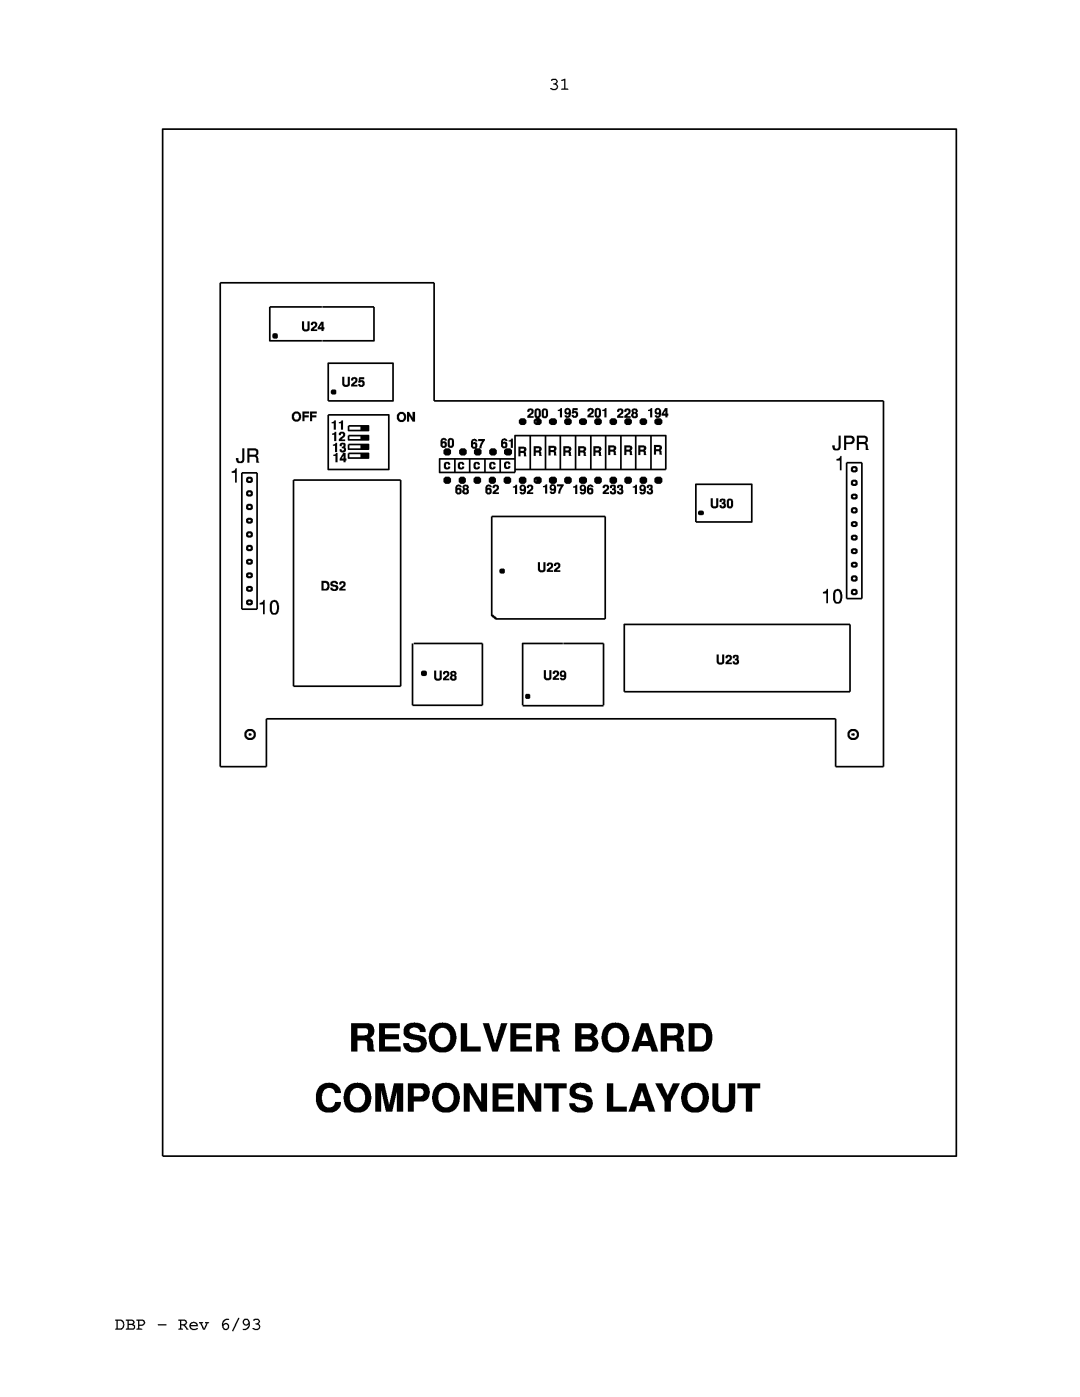 Elmo DBP SERIES manual Resolver Board Components Layout, U25, 200, 60 67 61 R R R R R R R R R R, c c c c c 